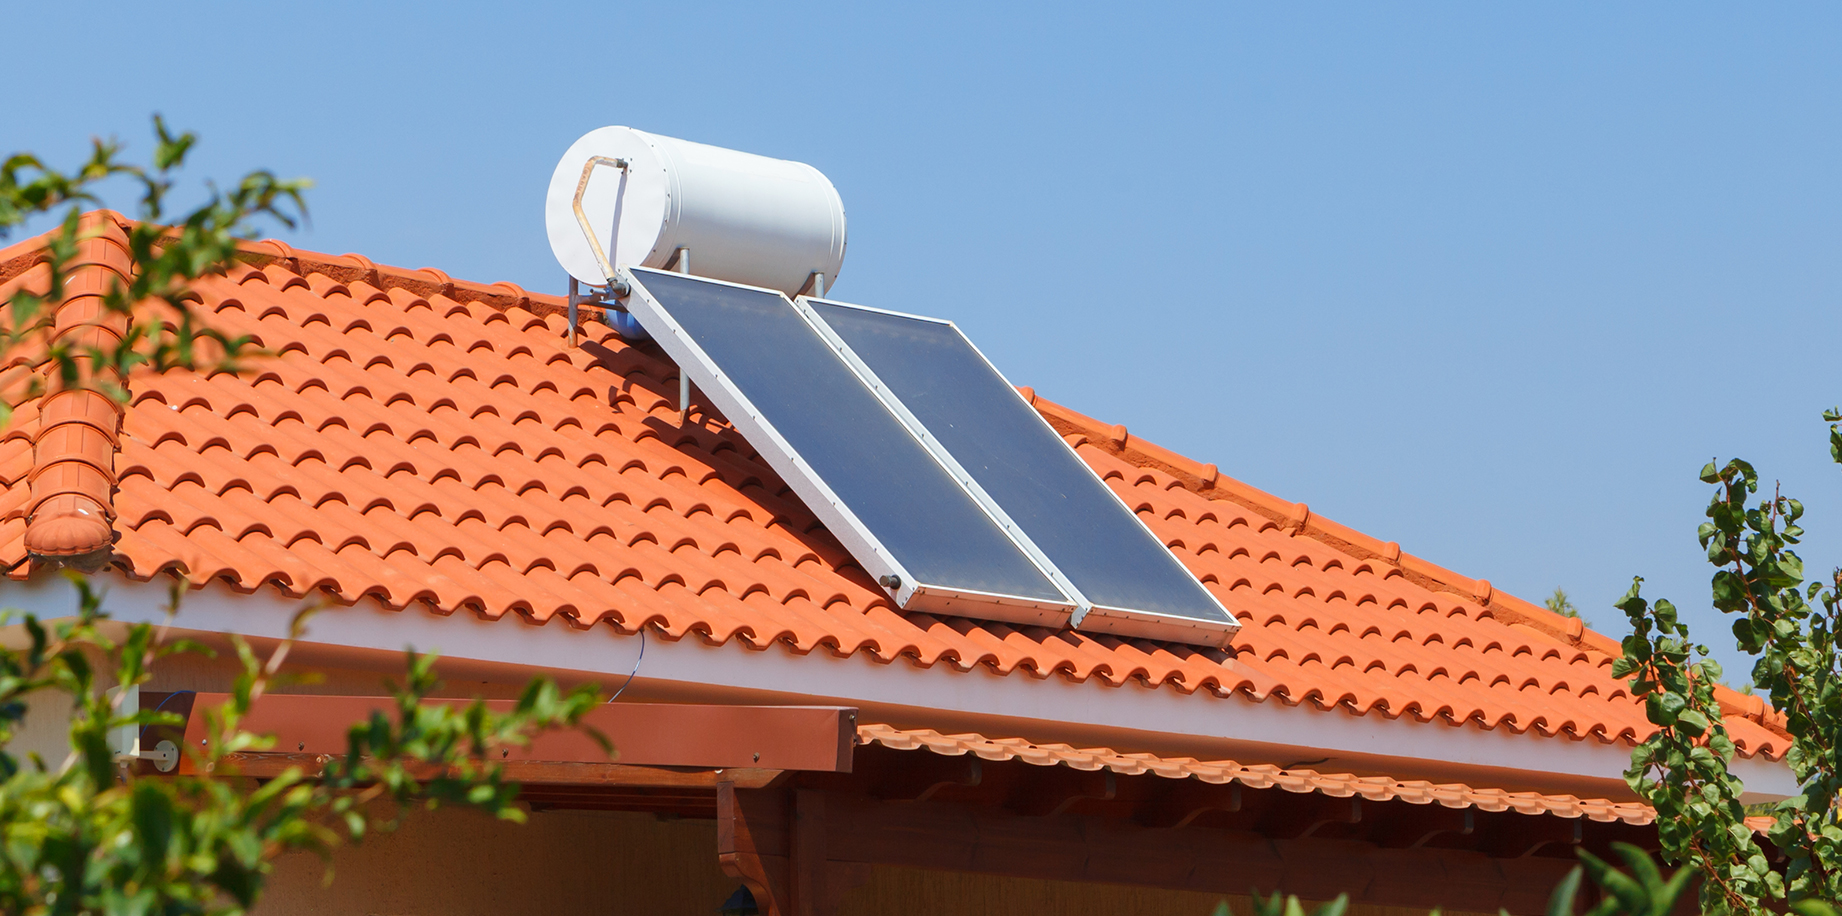 曾经遍布屋顶的太阳能热水器,为什么一夜之间消失了?